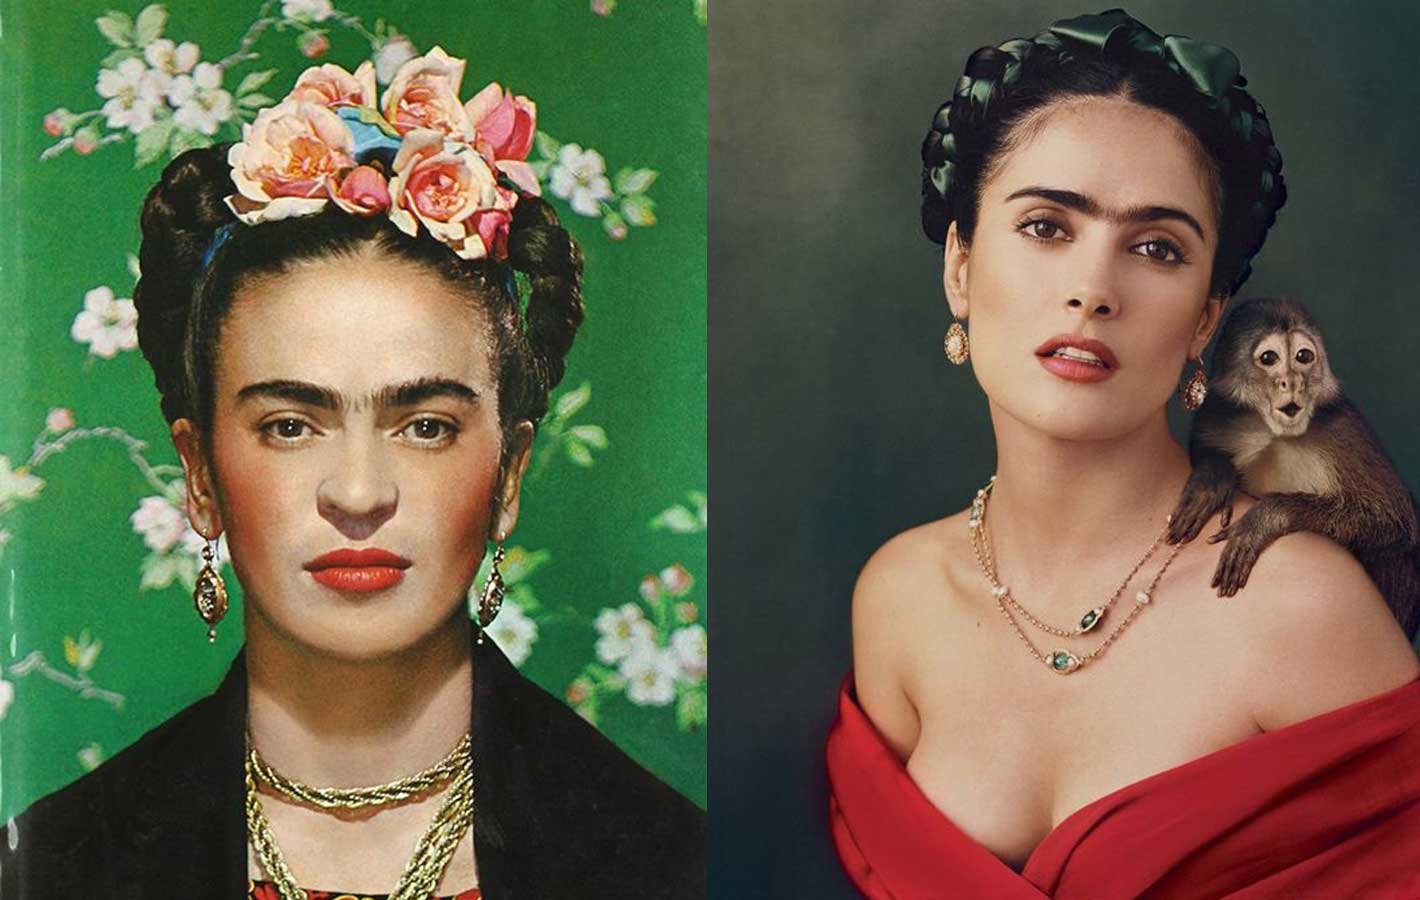 Wielki powrót monobrwi à la Frida Kahlo!